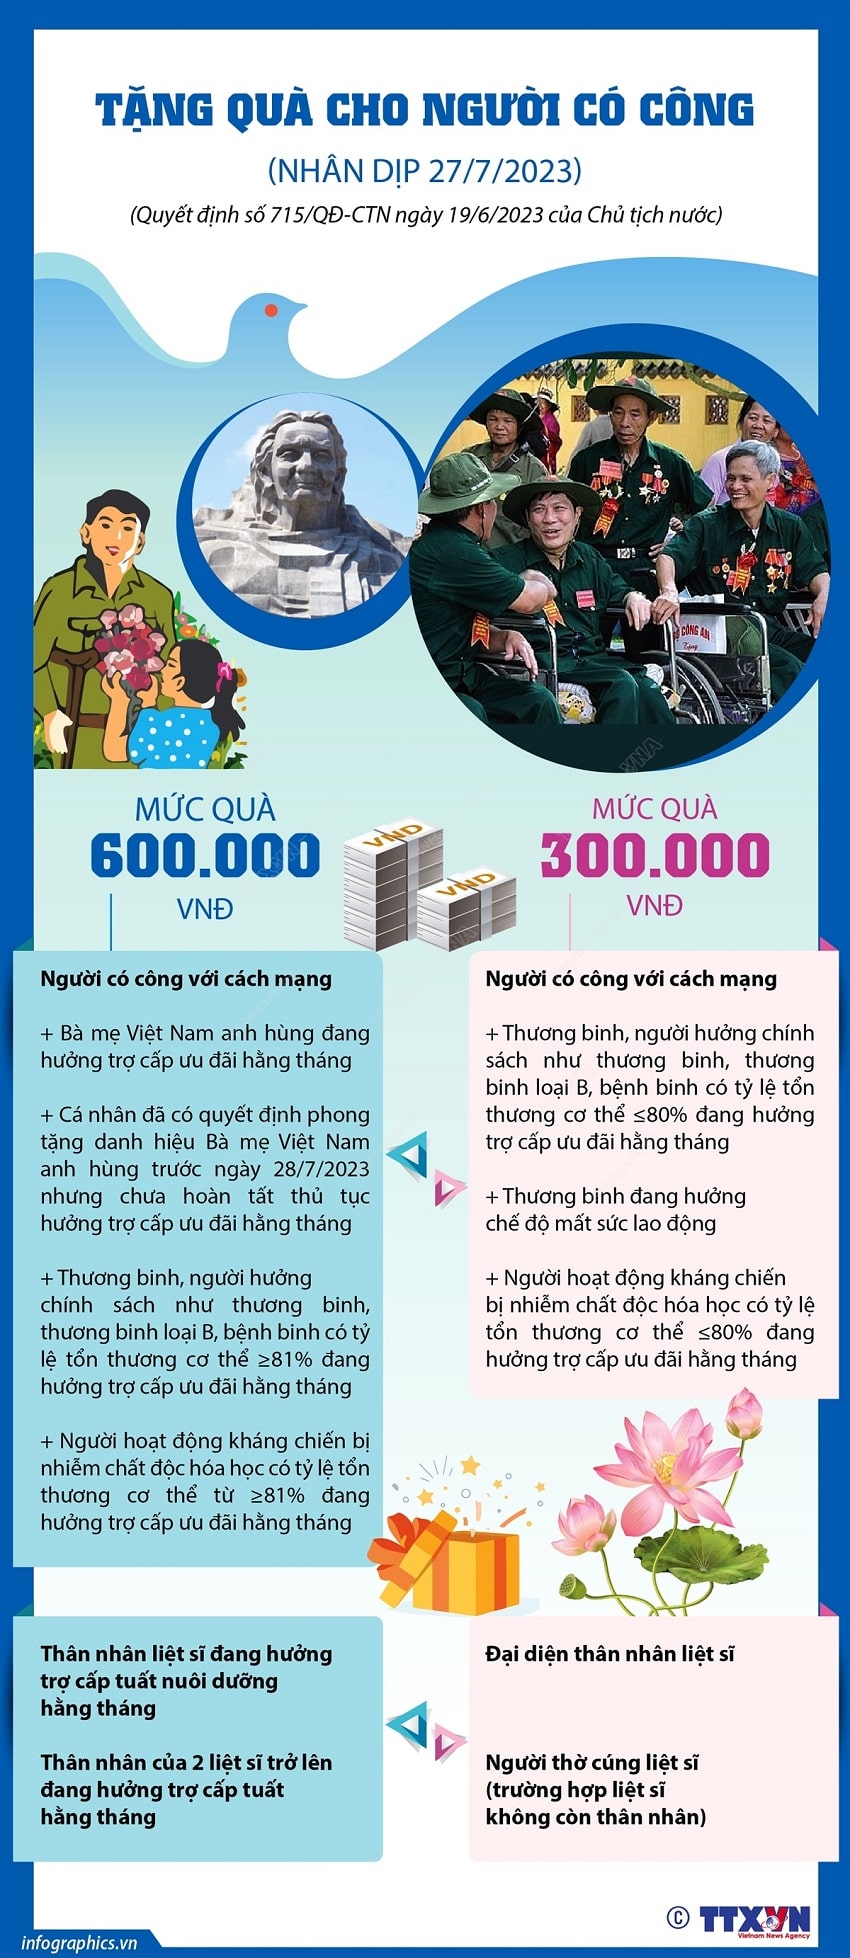 Tang qua cho nguoi co cong voi cach mang min - Infographics: Tặng quà cho người có công với cách mạng dịp 27/7/2023